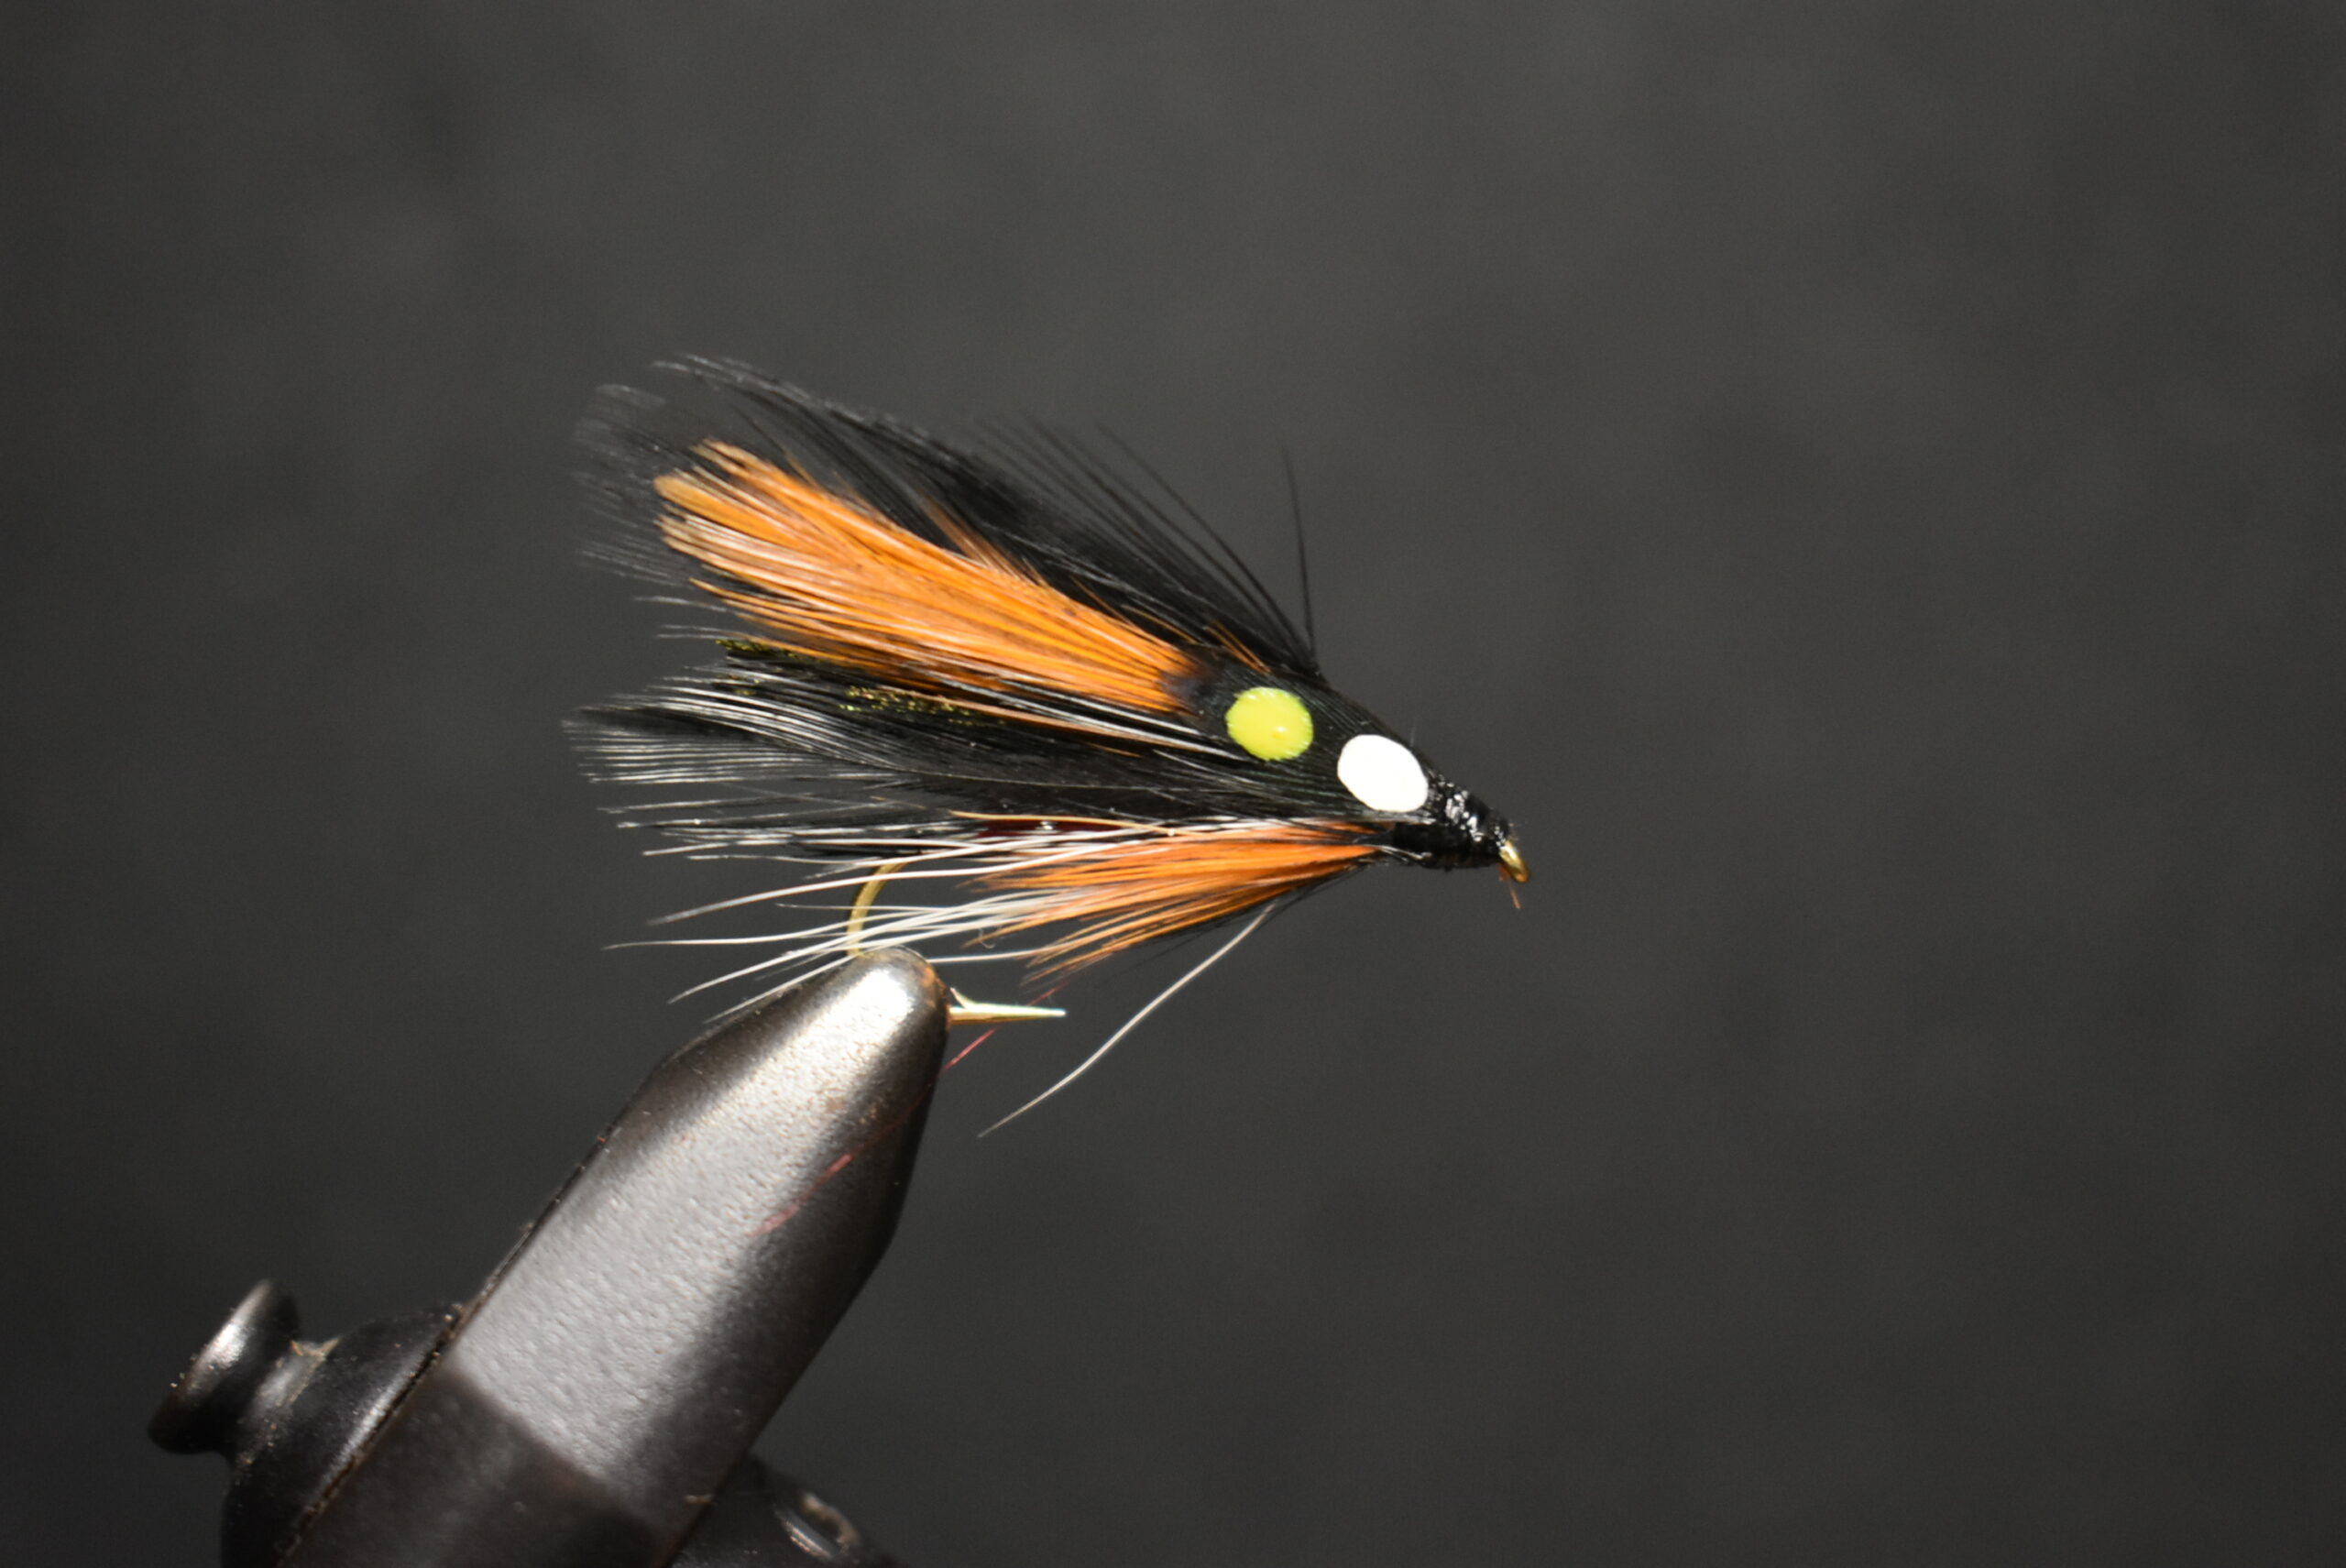 2 Flies, Size 10, Allies Favorite Streamer Fly Fishing Flies - Lady Fly Tyer